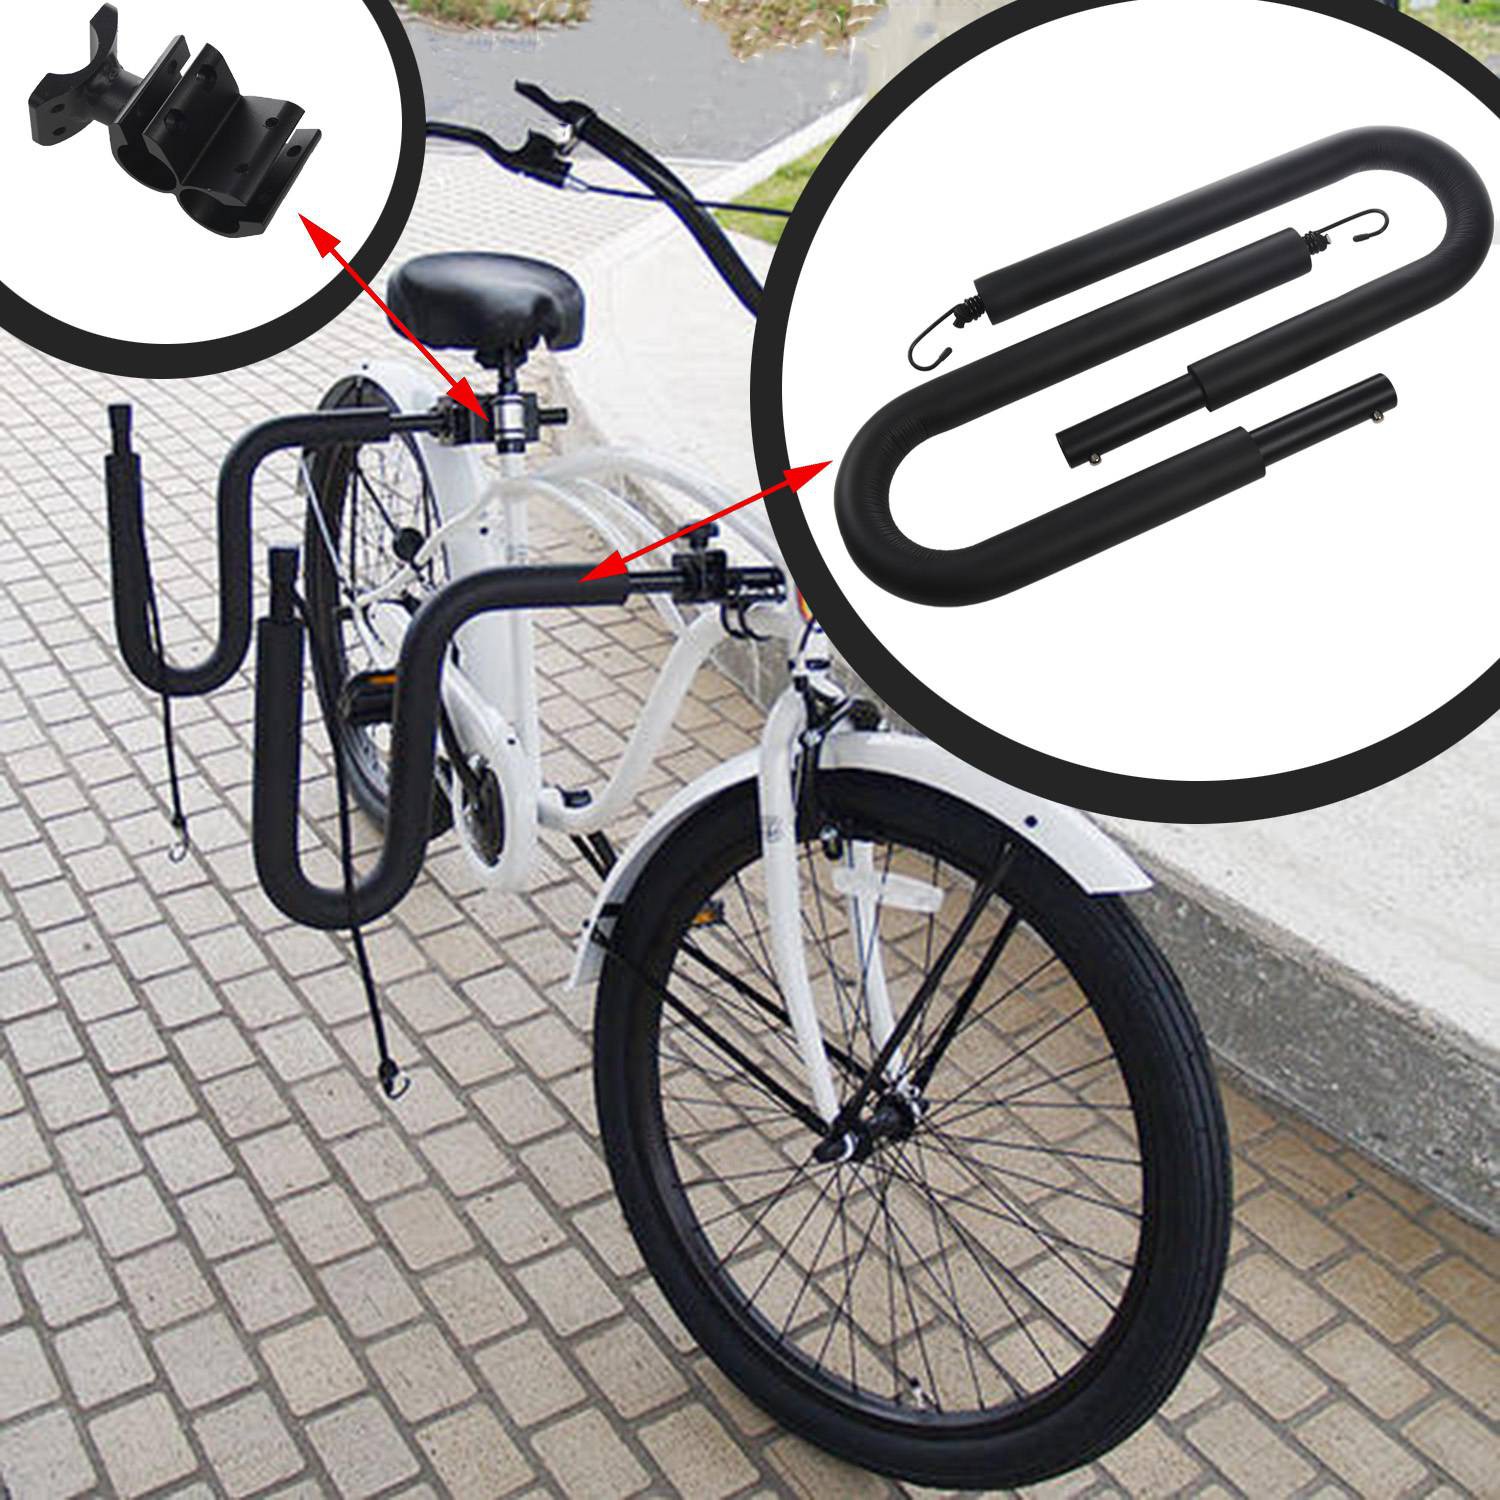 bike rack shopee